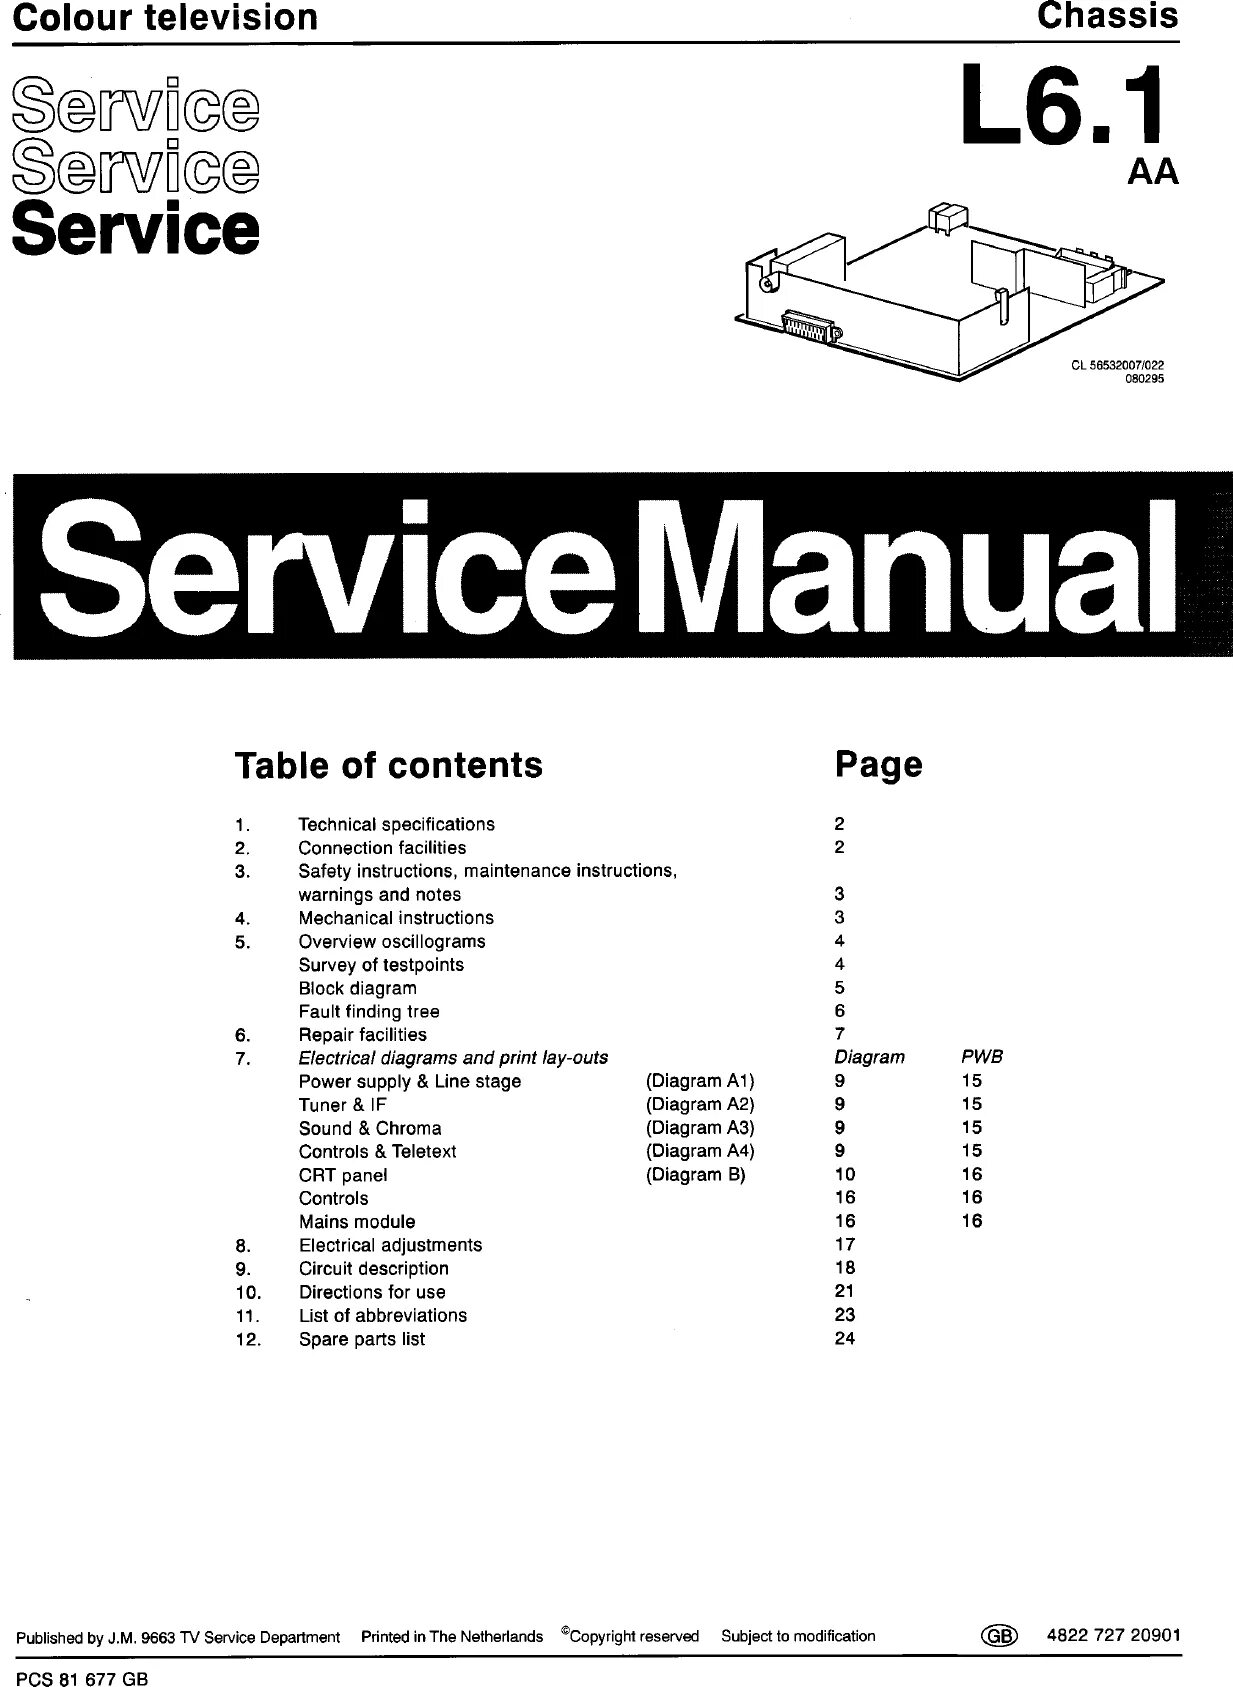 Телевизор Philips l6.1 AA. Шасси l 6.1. Philips SCA 1 service manual. 14pt1353/58 service manual.